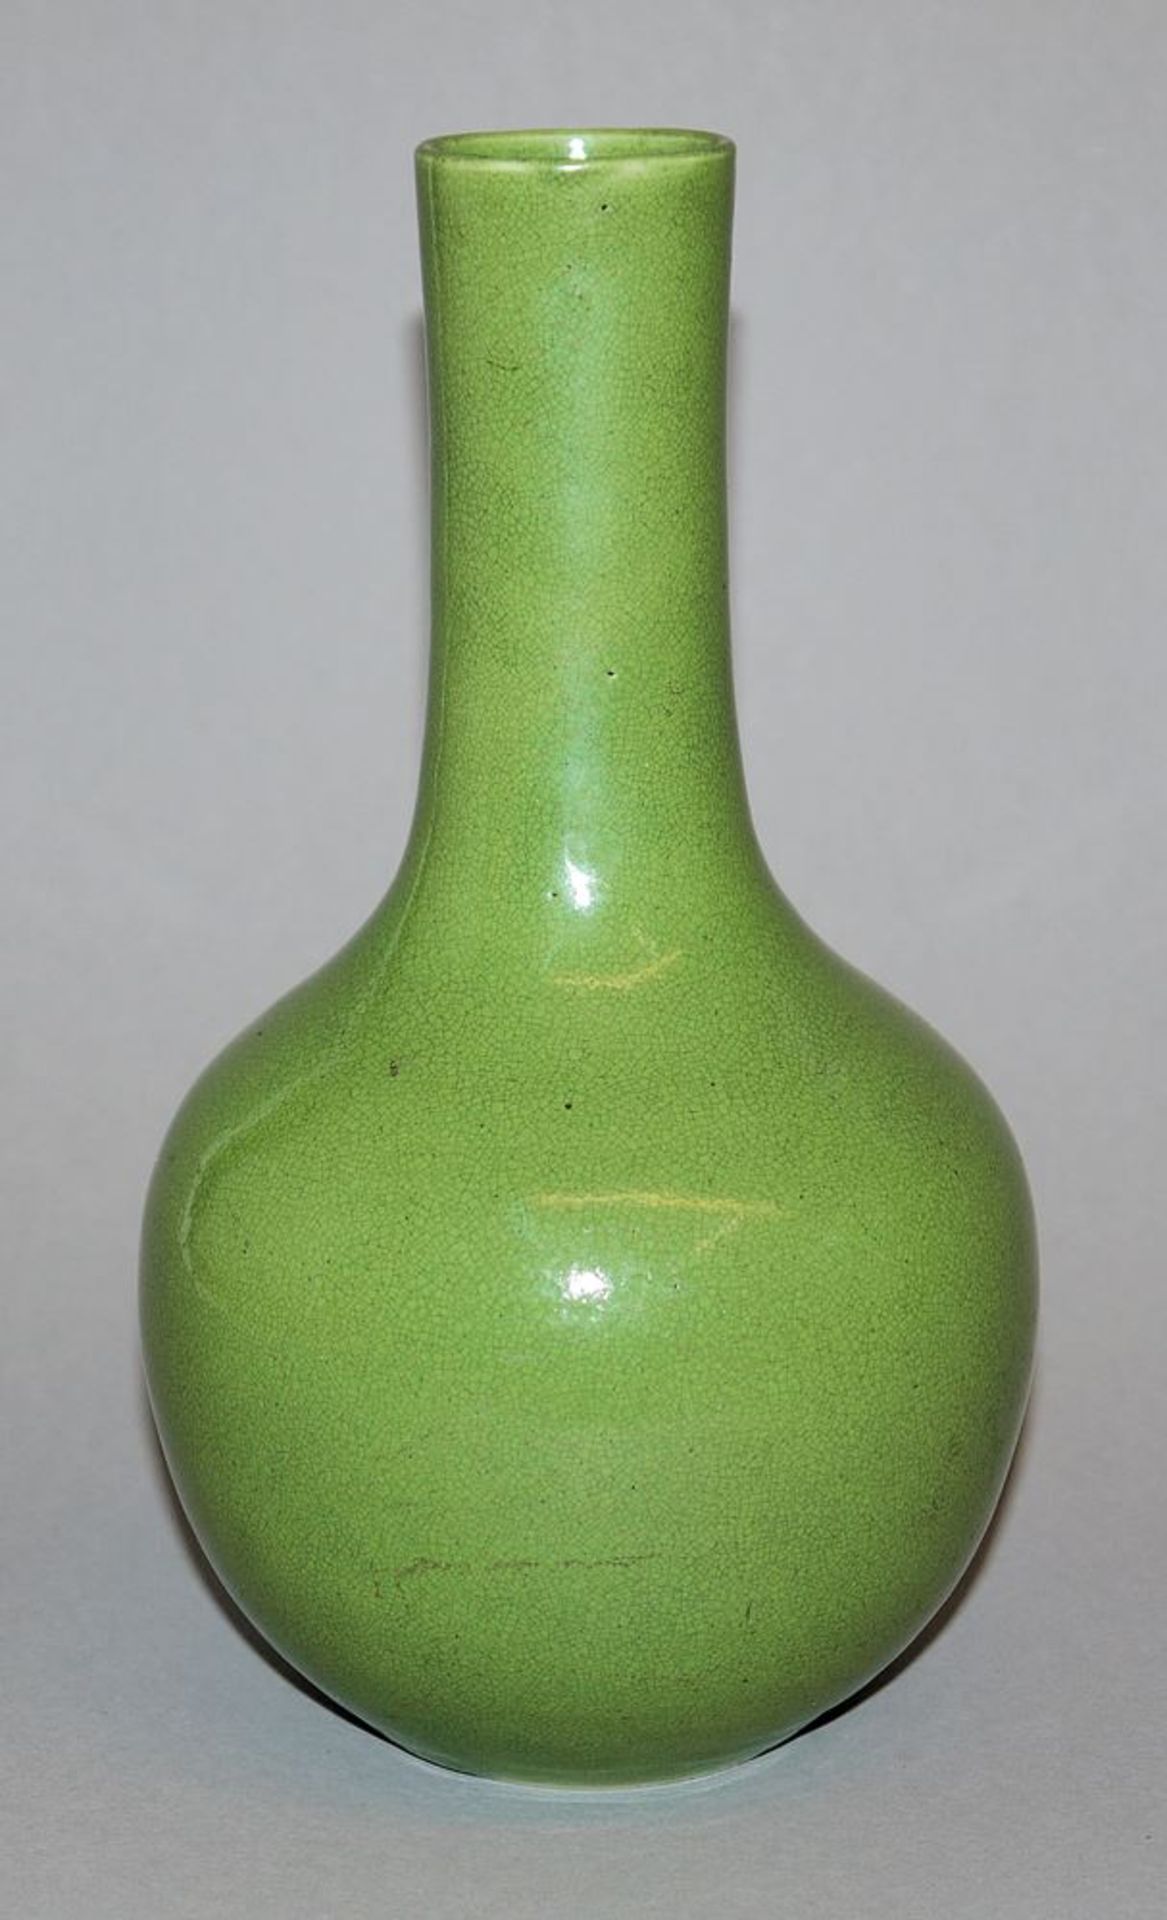 Tianqiuping-Vase mit apfelgrüner Craquelé-Glasur, Qing-Zeit, China 18./19. Jh. - Bild 2 aus 4